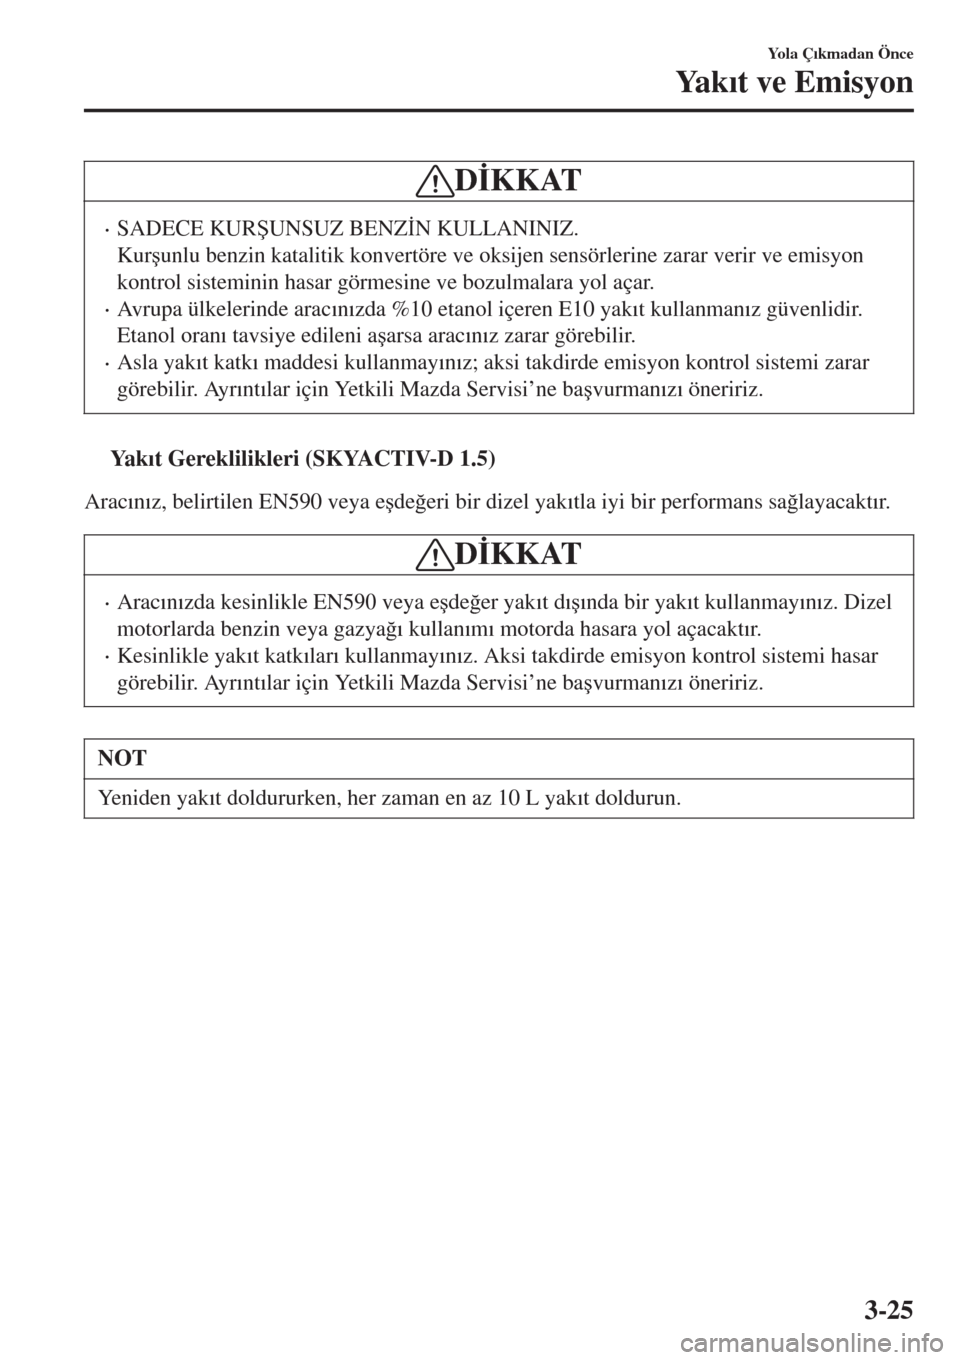 MAZDA MODEL CX-3 2015  Kullanım Kılavuzu (in Turkish) D�øKKAT
•SADECE KUR�ùUNSUZ BENZ�øN KULLANINIZ.
Kur�úunlu benzin katalitik konvertöre ve oksijen sensörlerine zarar verir ve emisyon
kontrol sisteminin hasar görmesine ve bozulmalara yol açar